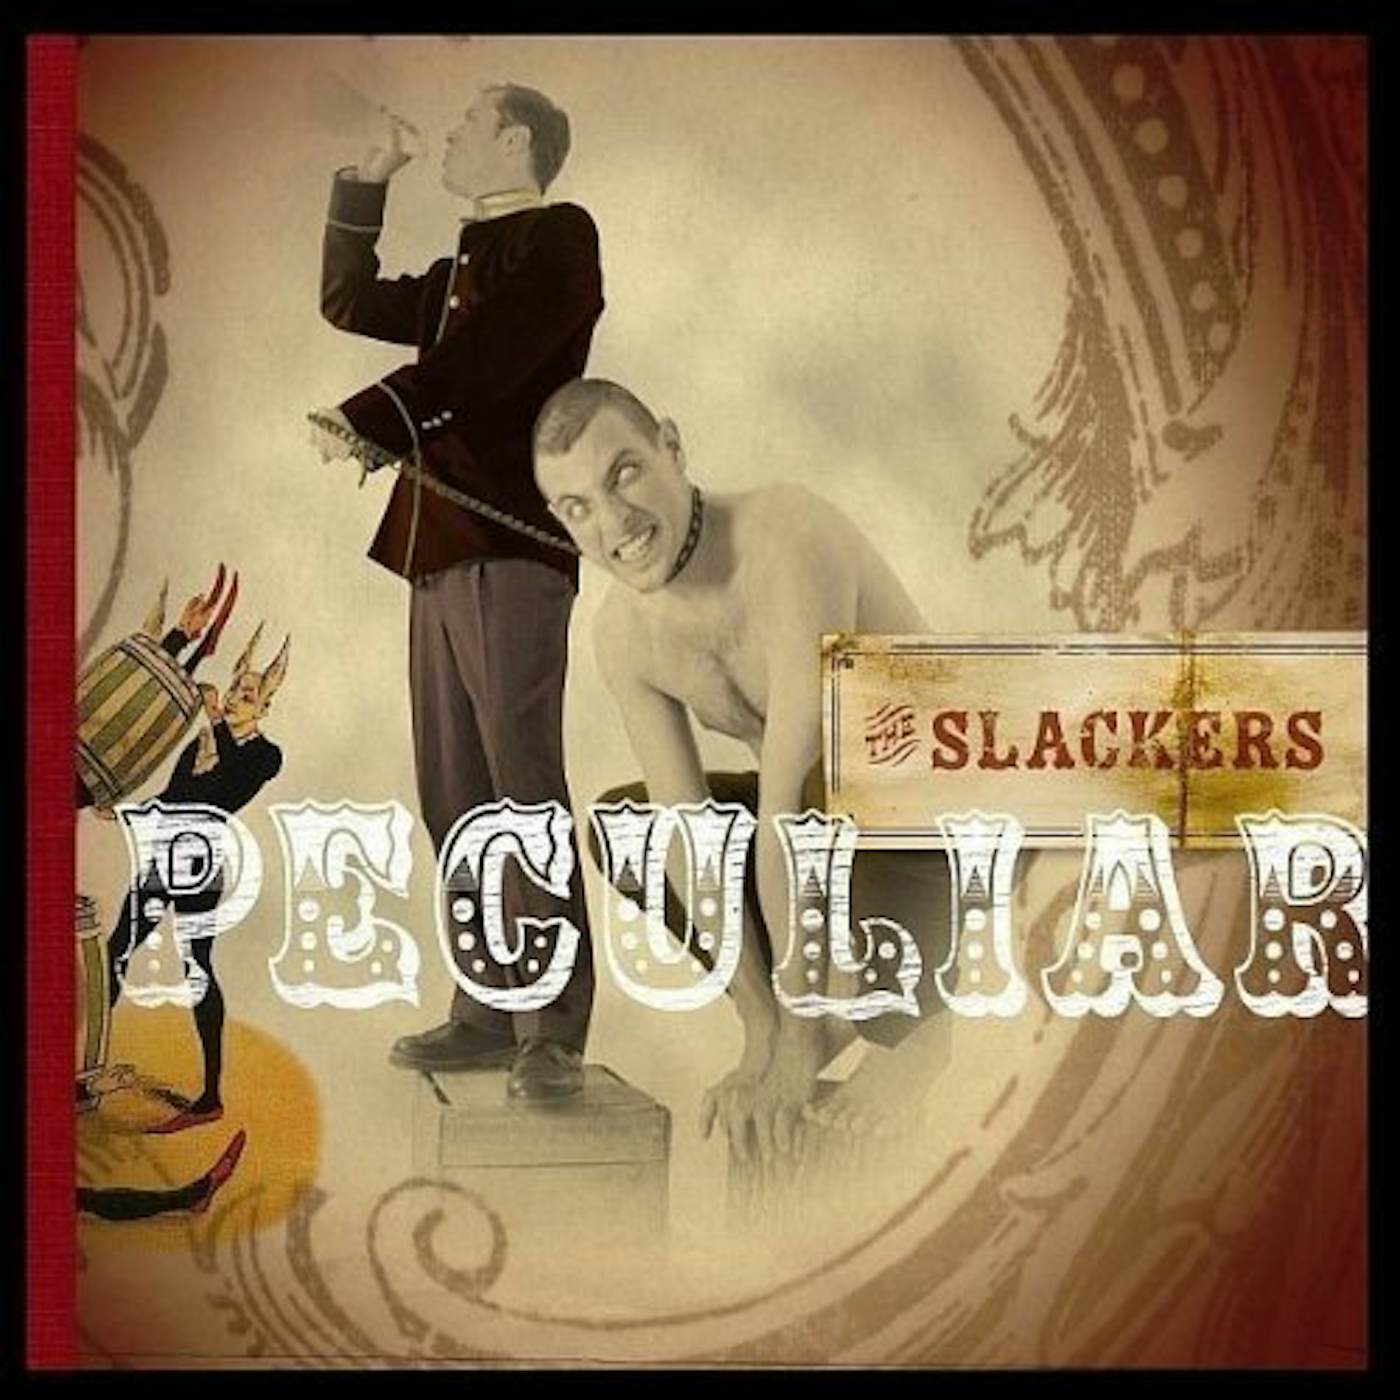 Dem Slackers Peculiar Vinyl Record